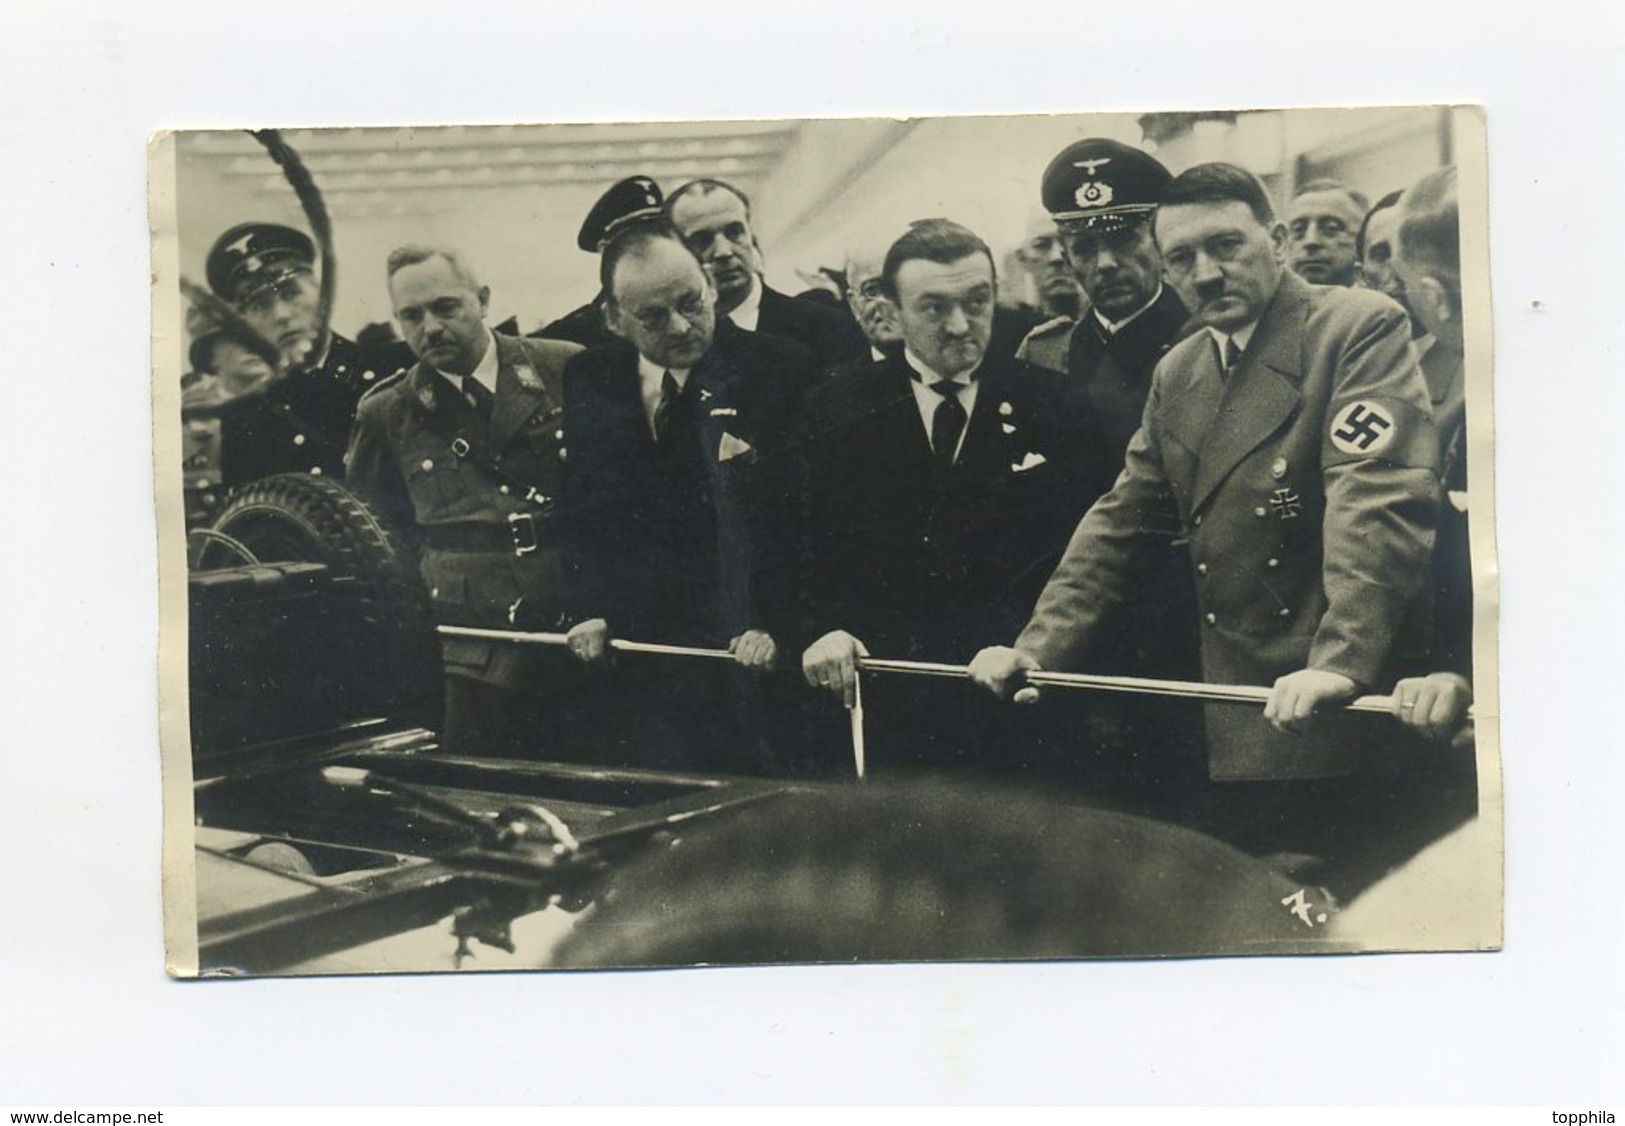 1939 3. Reich Fotokarte Adolf Hitler Und Gefolge Vor Fahrzeug Auf Der IAA Berlin Echt Gelaufen Mi 686 Verlag Menzendorf - Briefe U. Dokumente